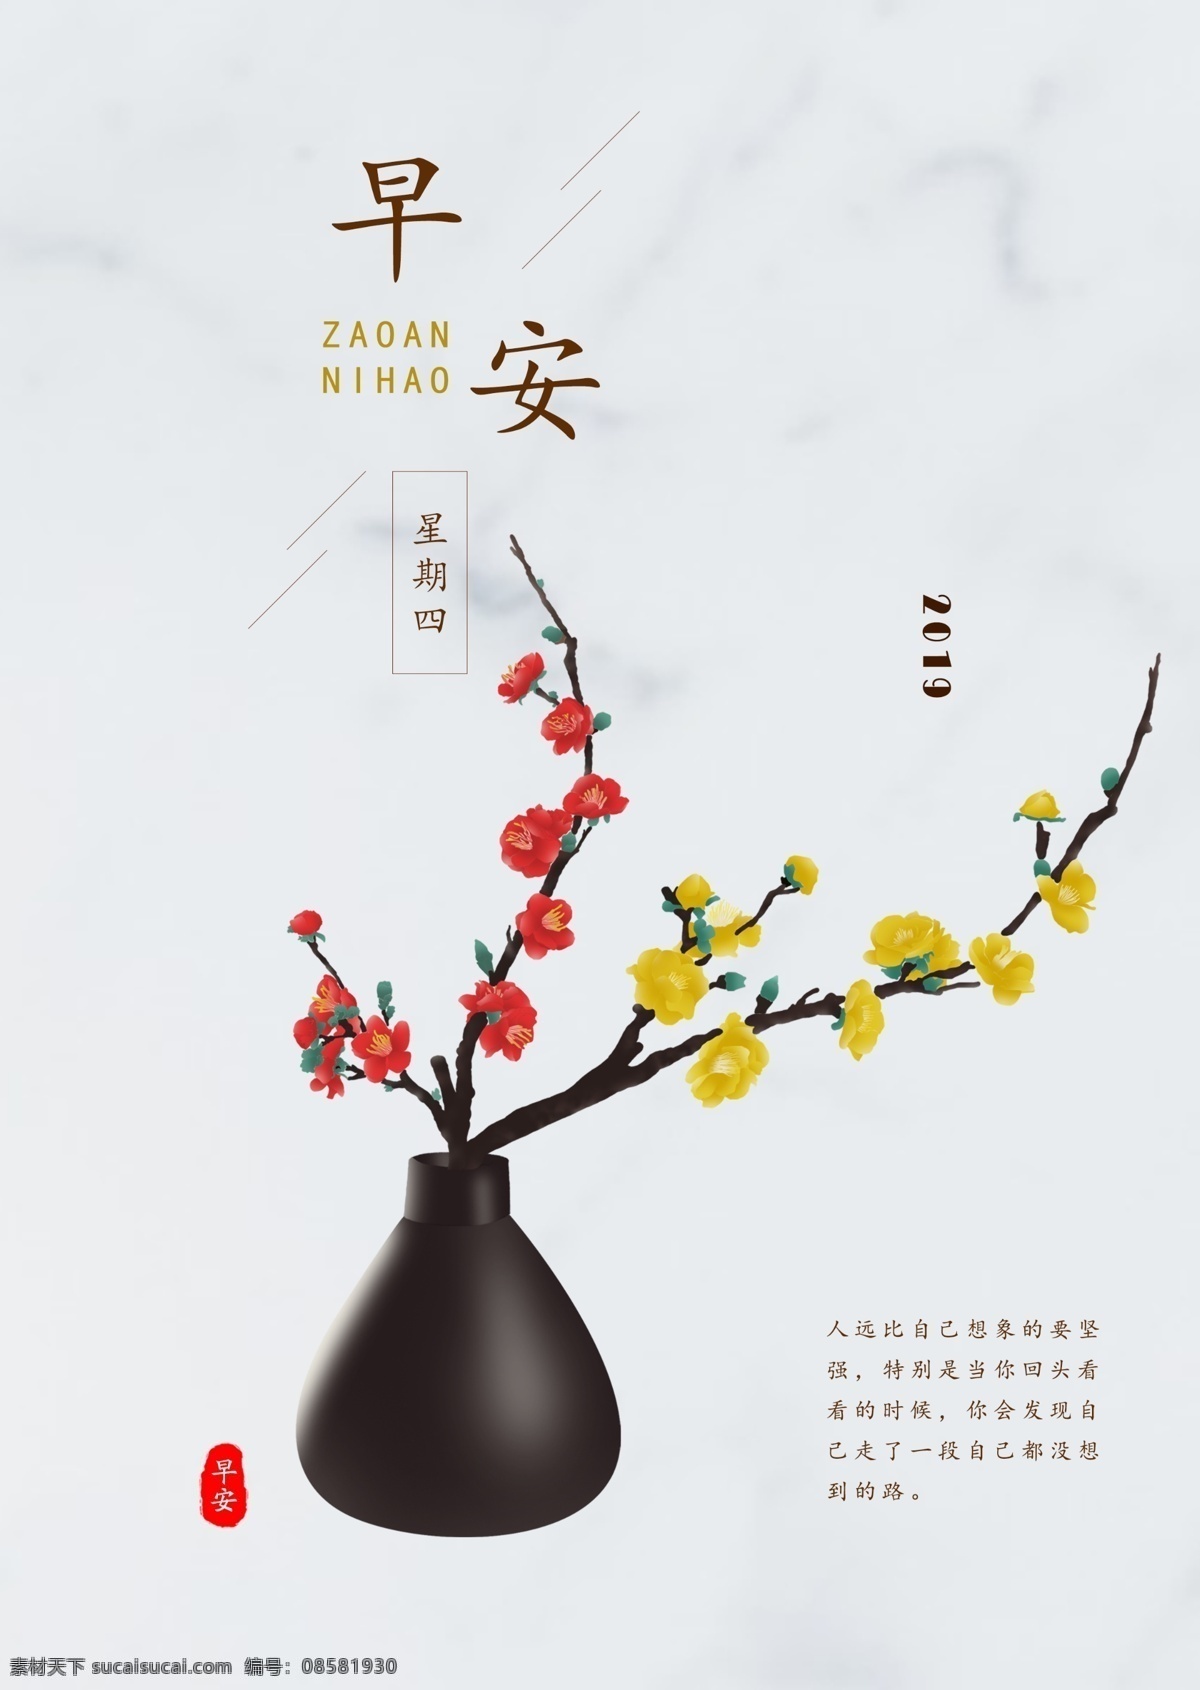 早安 梅花 手绘 中国 风 励志 宣传 图 花瓶 中国风 励志海报